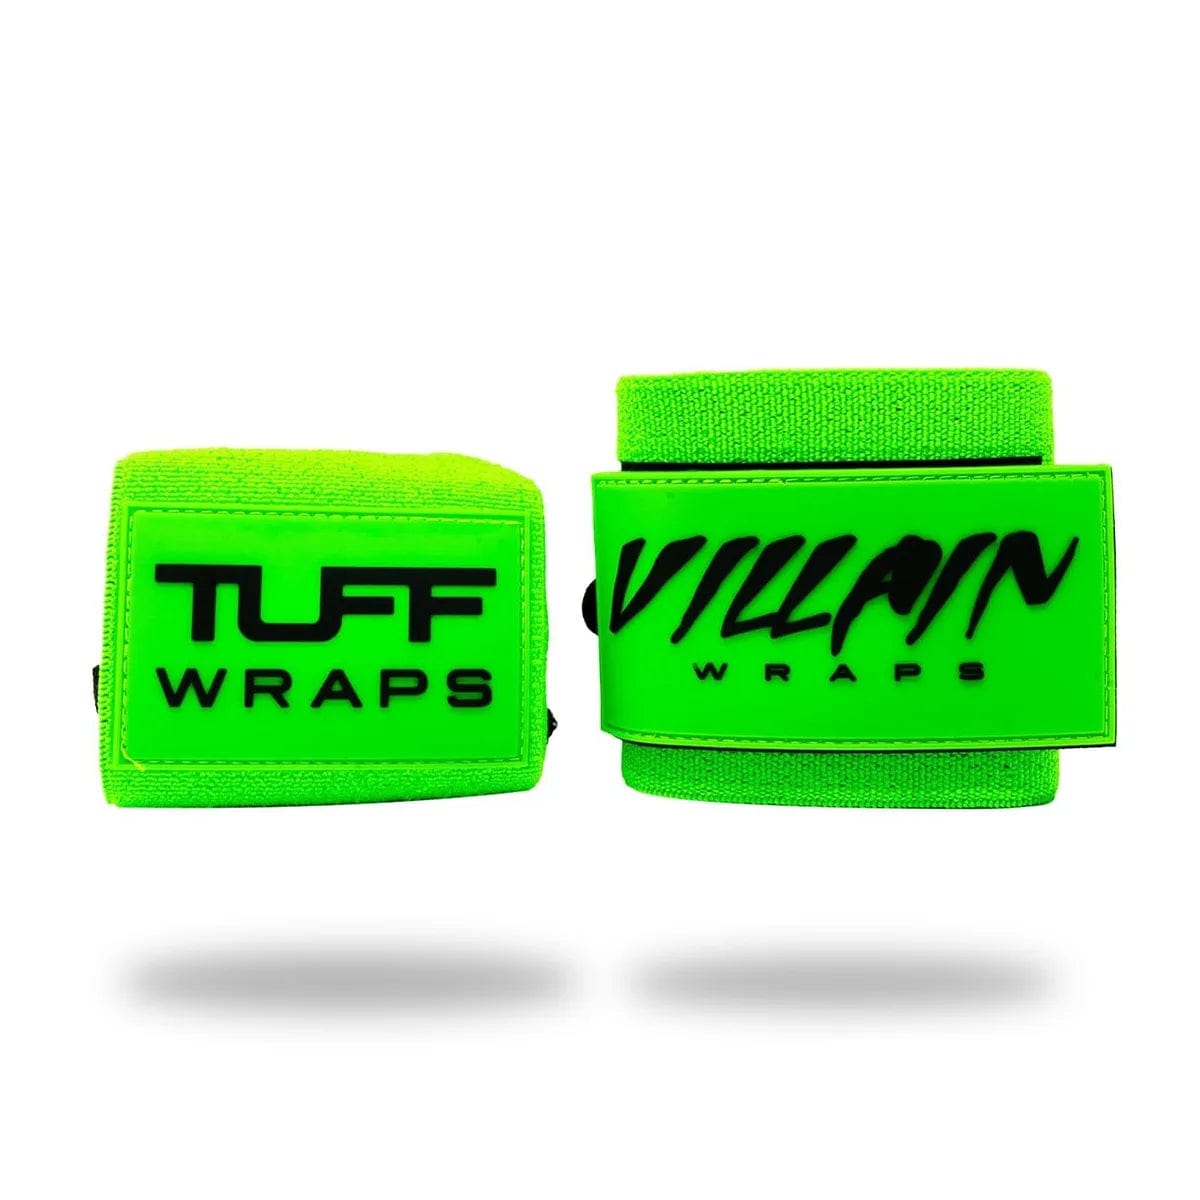 16" Villain "STIFF" Wrist Wraps - Neon Green TuffWraps.com